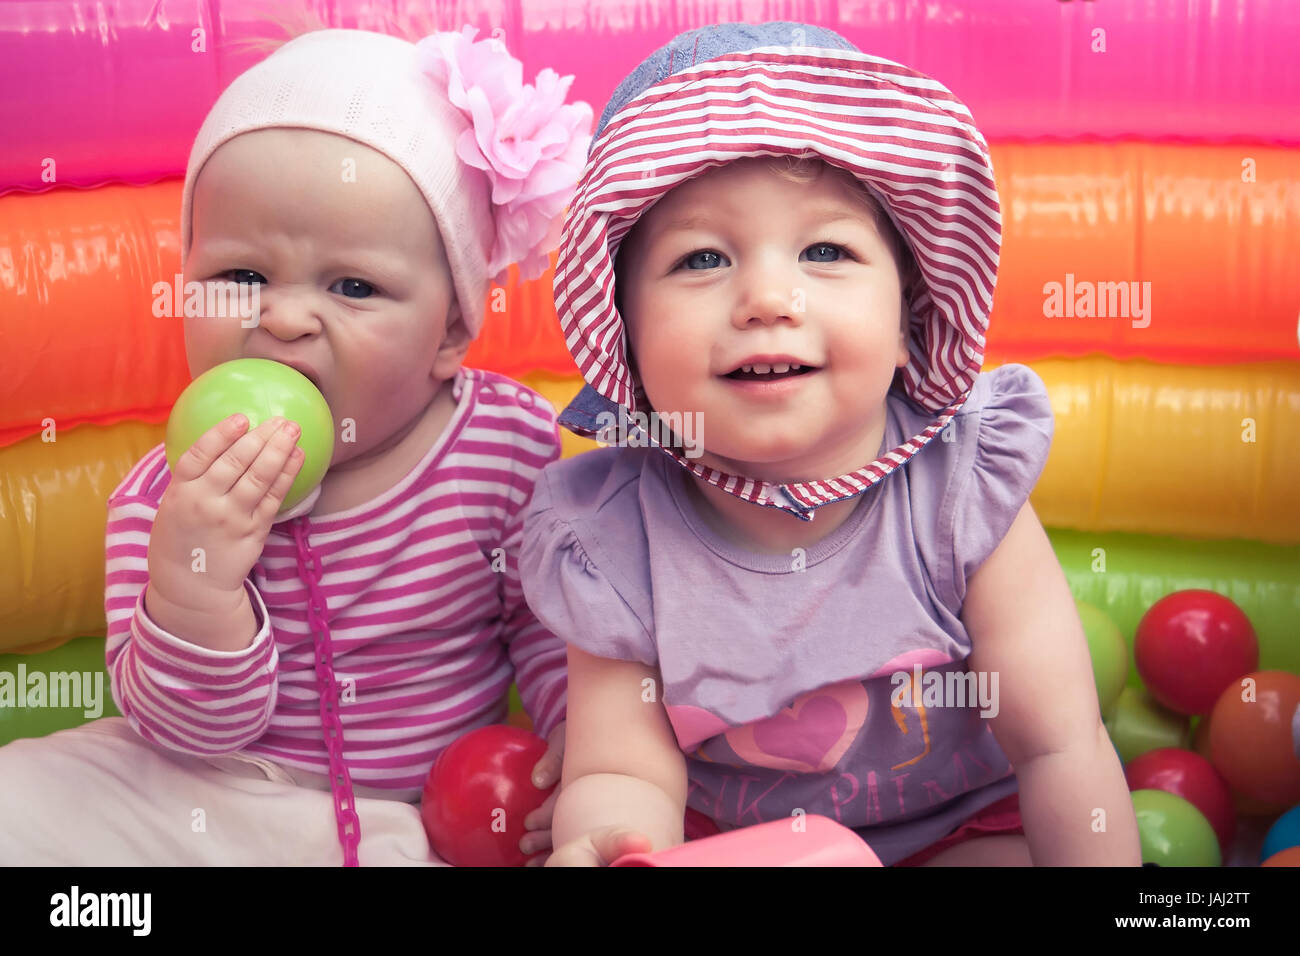 Zwei Lächeln fröhlich niedlichen Baby Mädchen spielen zusammen im Vergnügungspark mit Spielzeug für Kinder Freundschaft und glückliche Kindheit Stockfoto